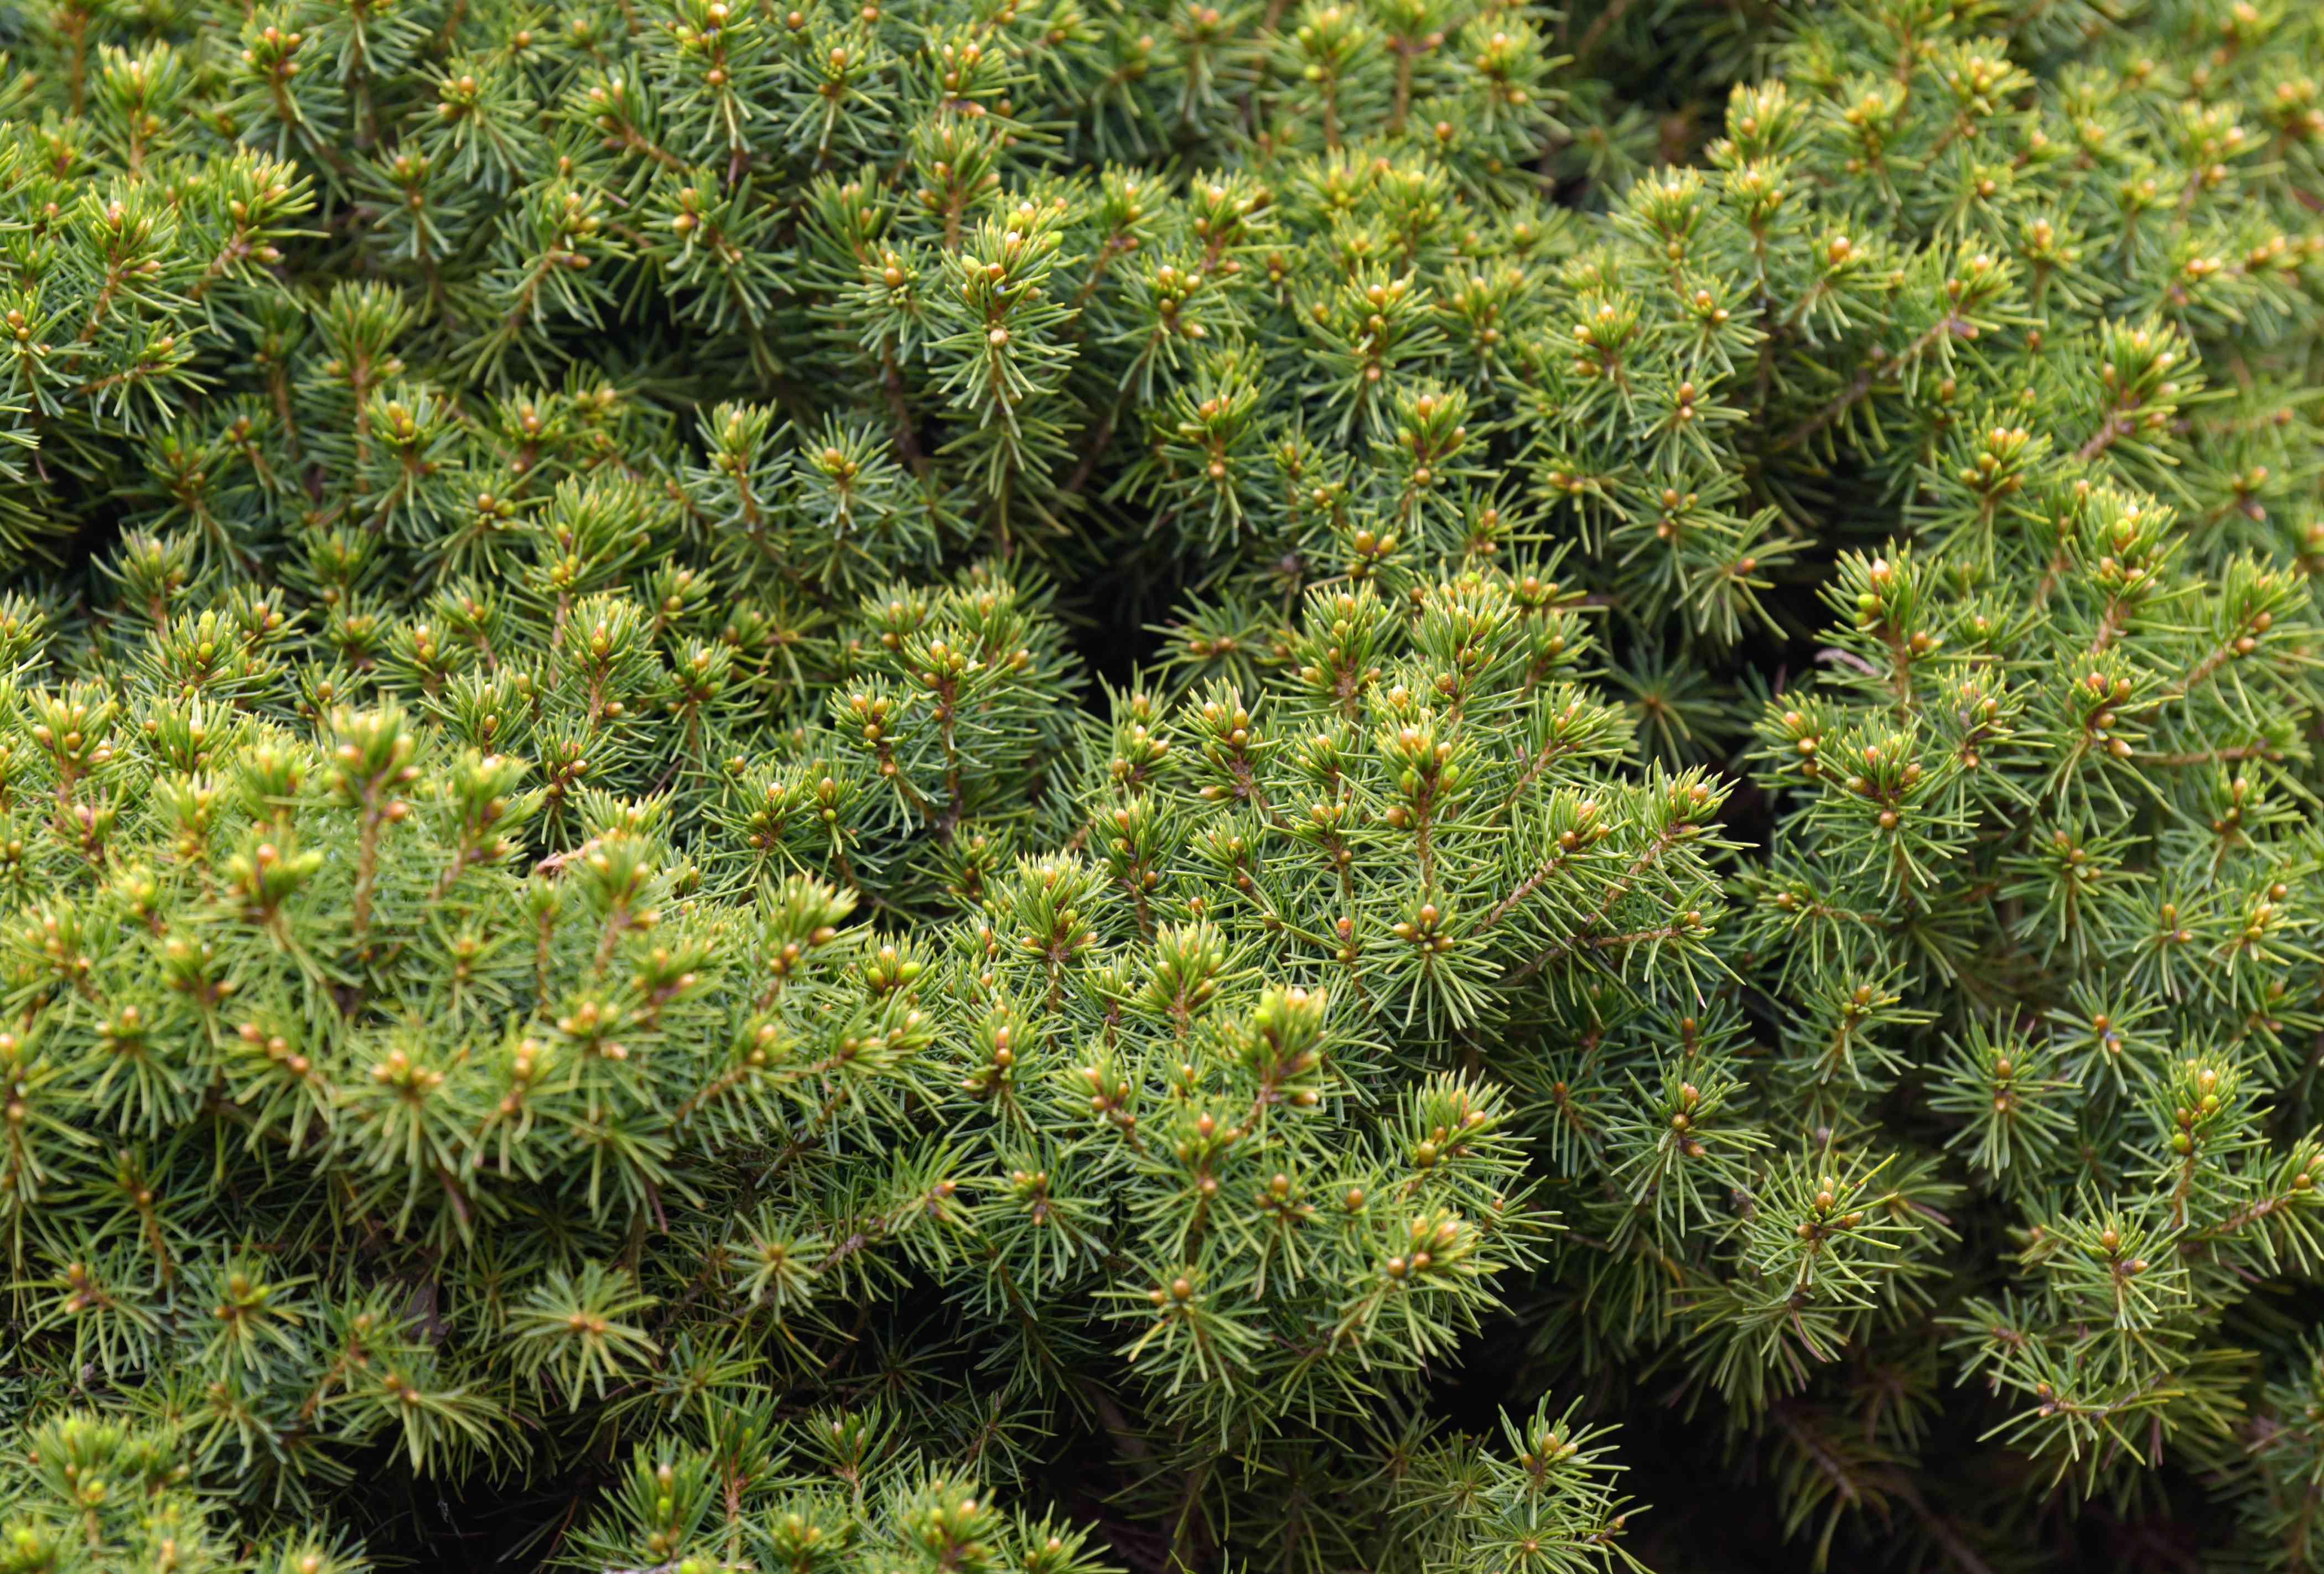 dwarf-alberta-spruce-trees-2132080-06-17ddb8ed552d4950bc1977173c413563.JPG